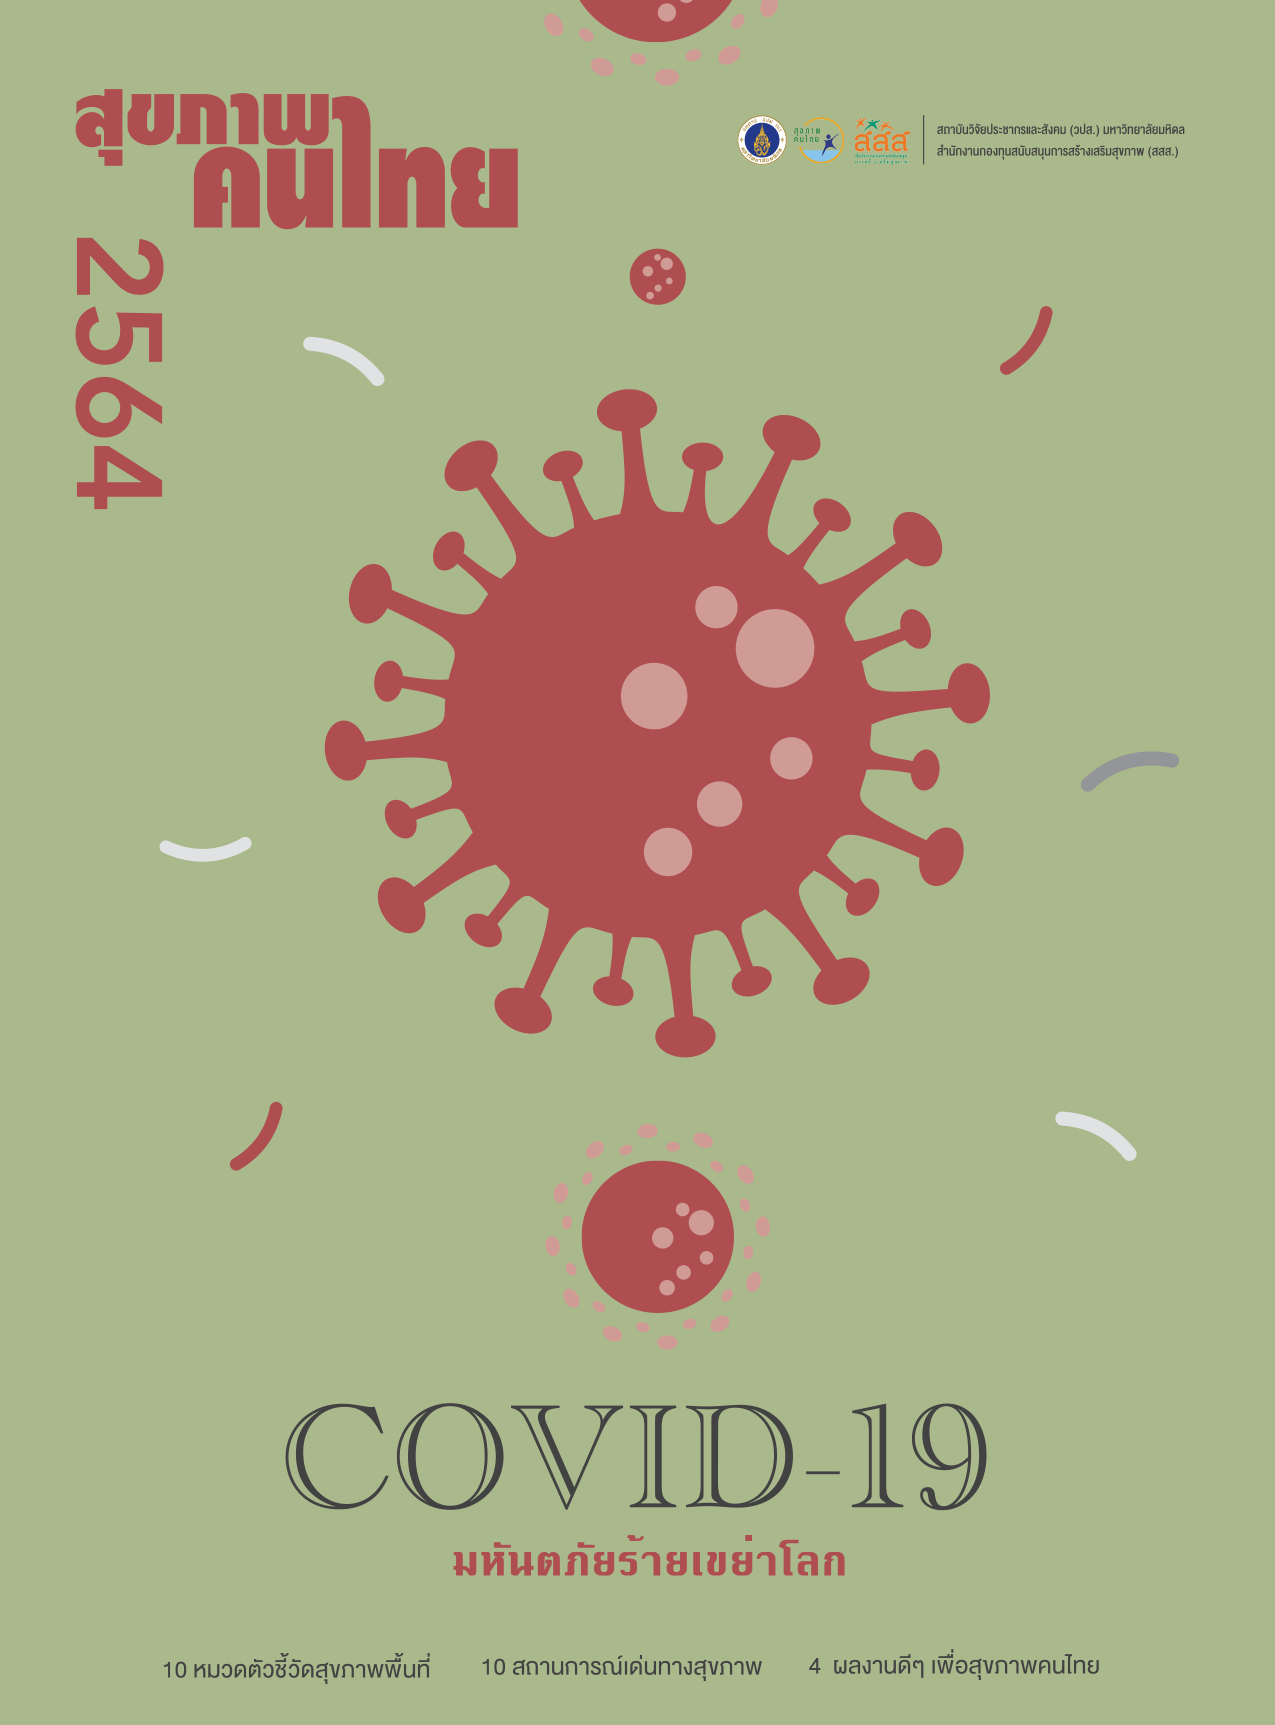 สุขภาพคนไทย 2564: COVID-19 มหันตภัยร้ายเขย่าโลก